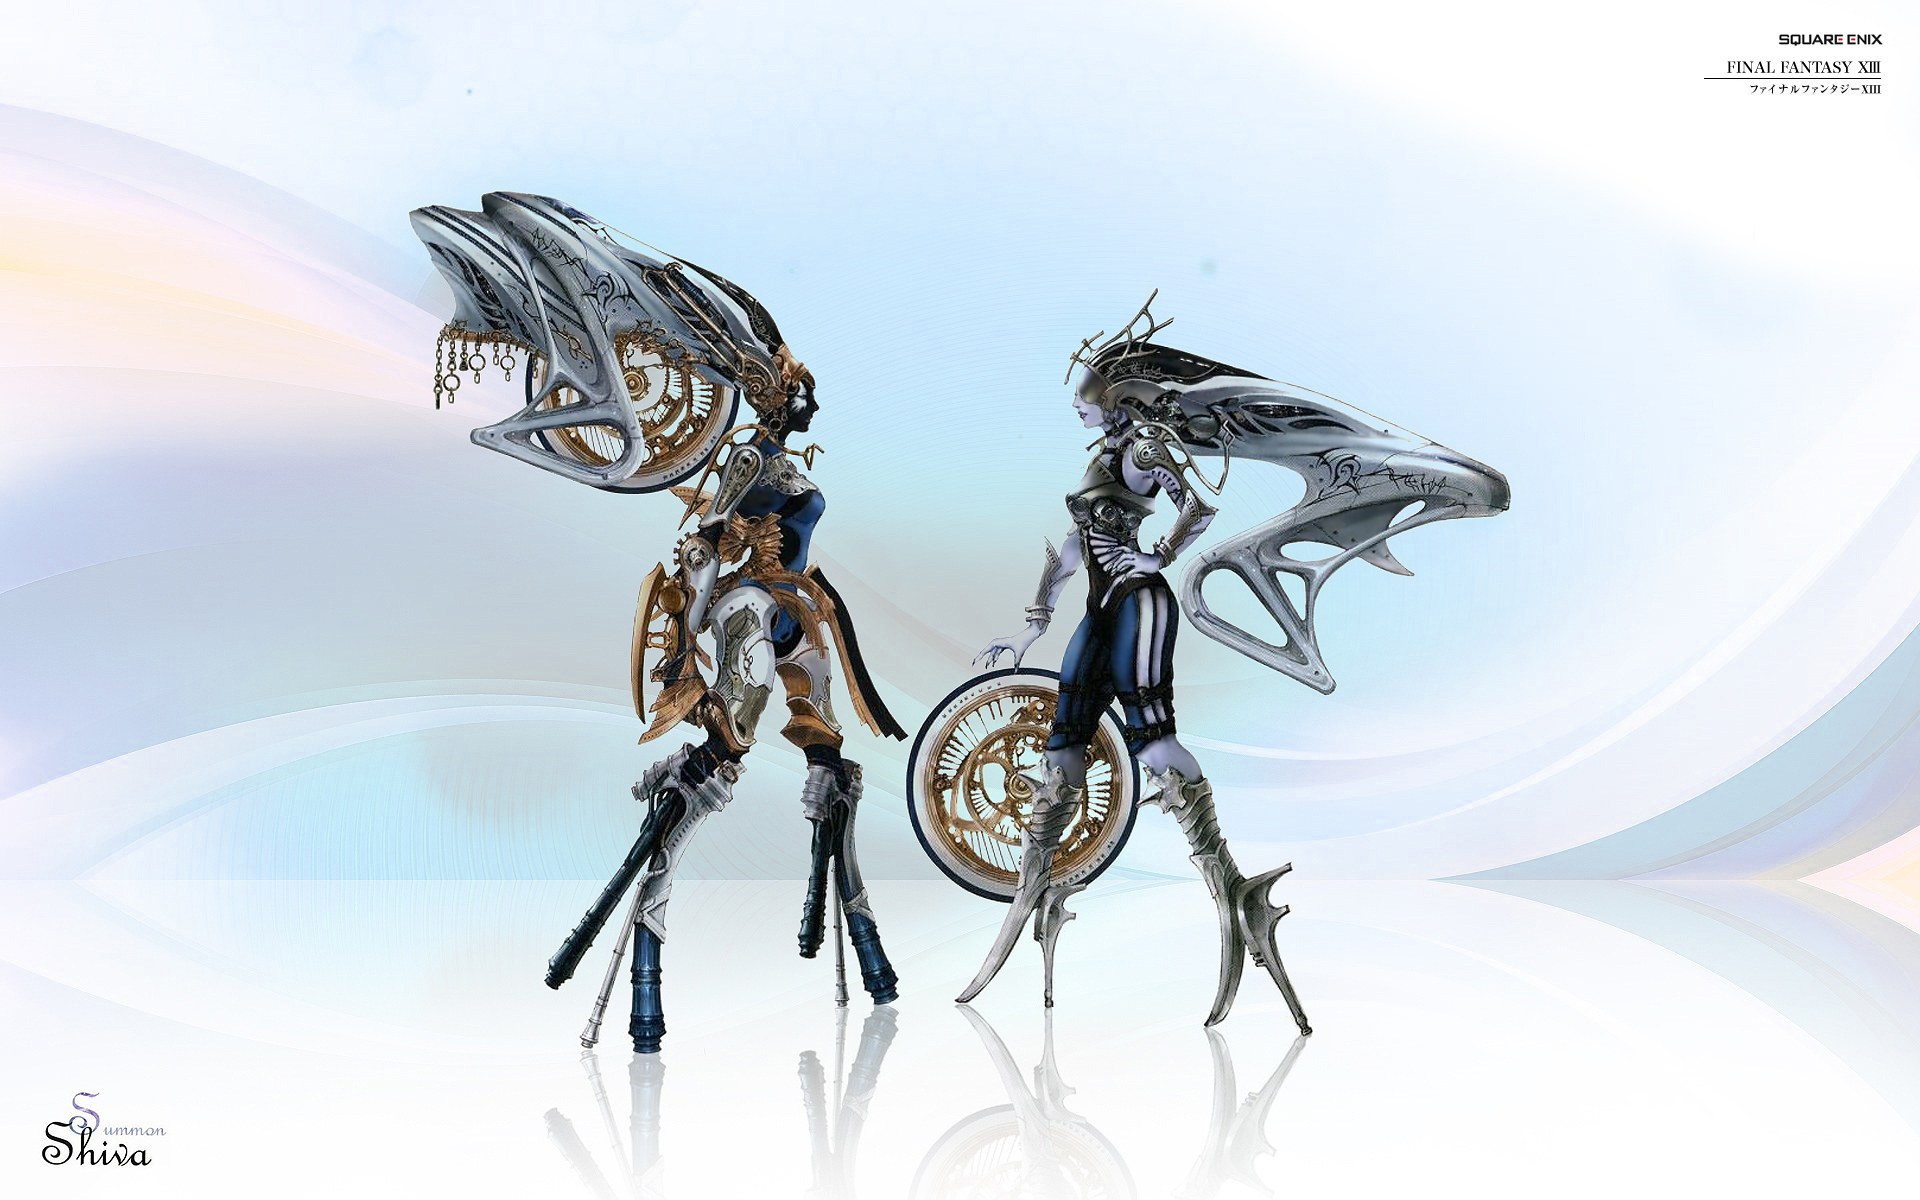 Final Fantasy characters: Nix, Stiria, and Shiva.